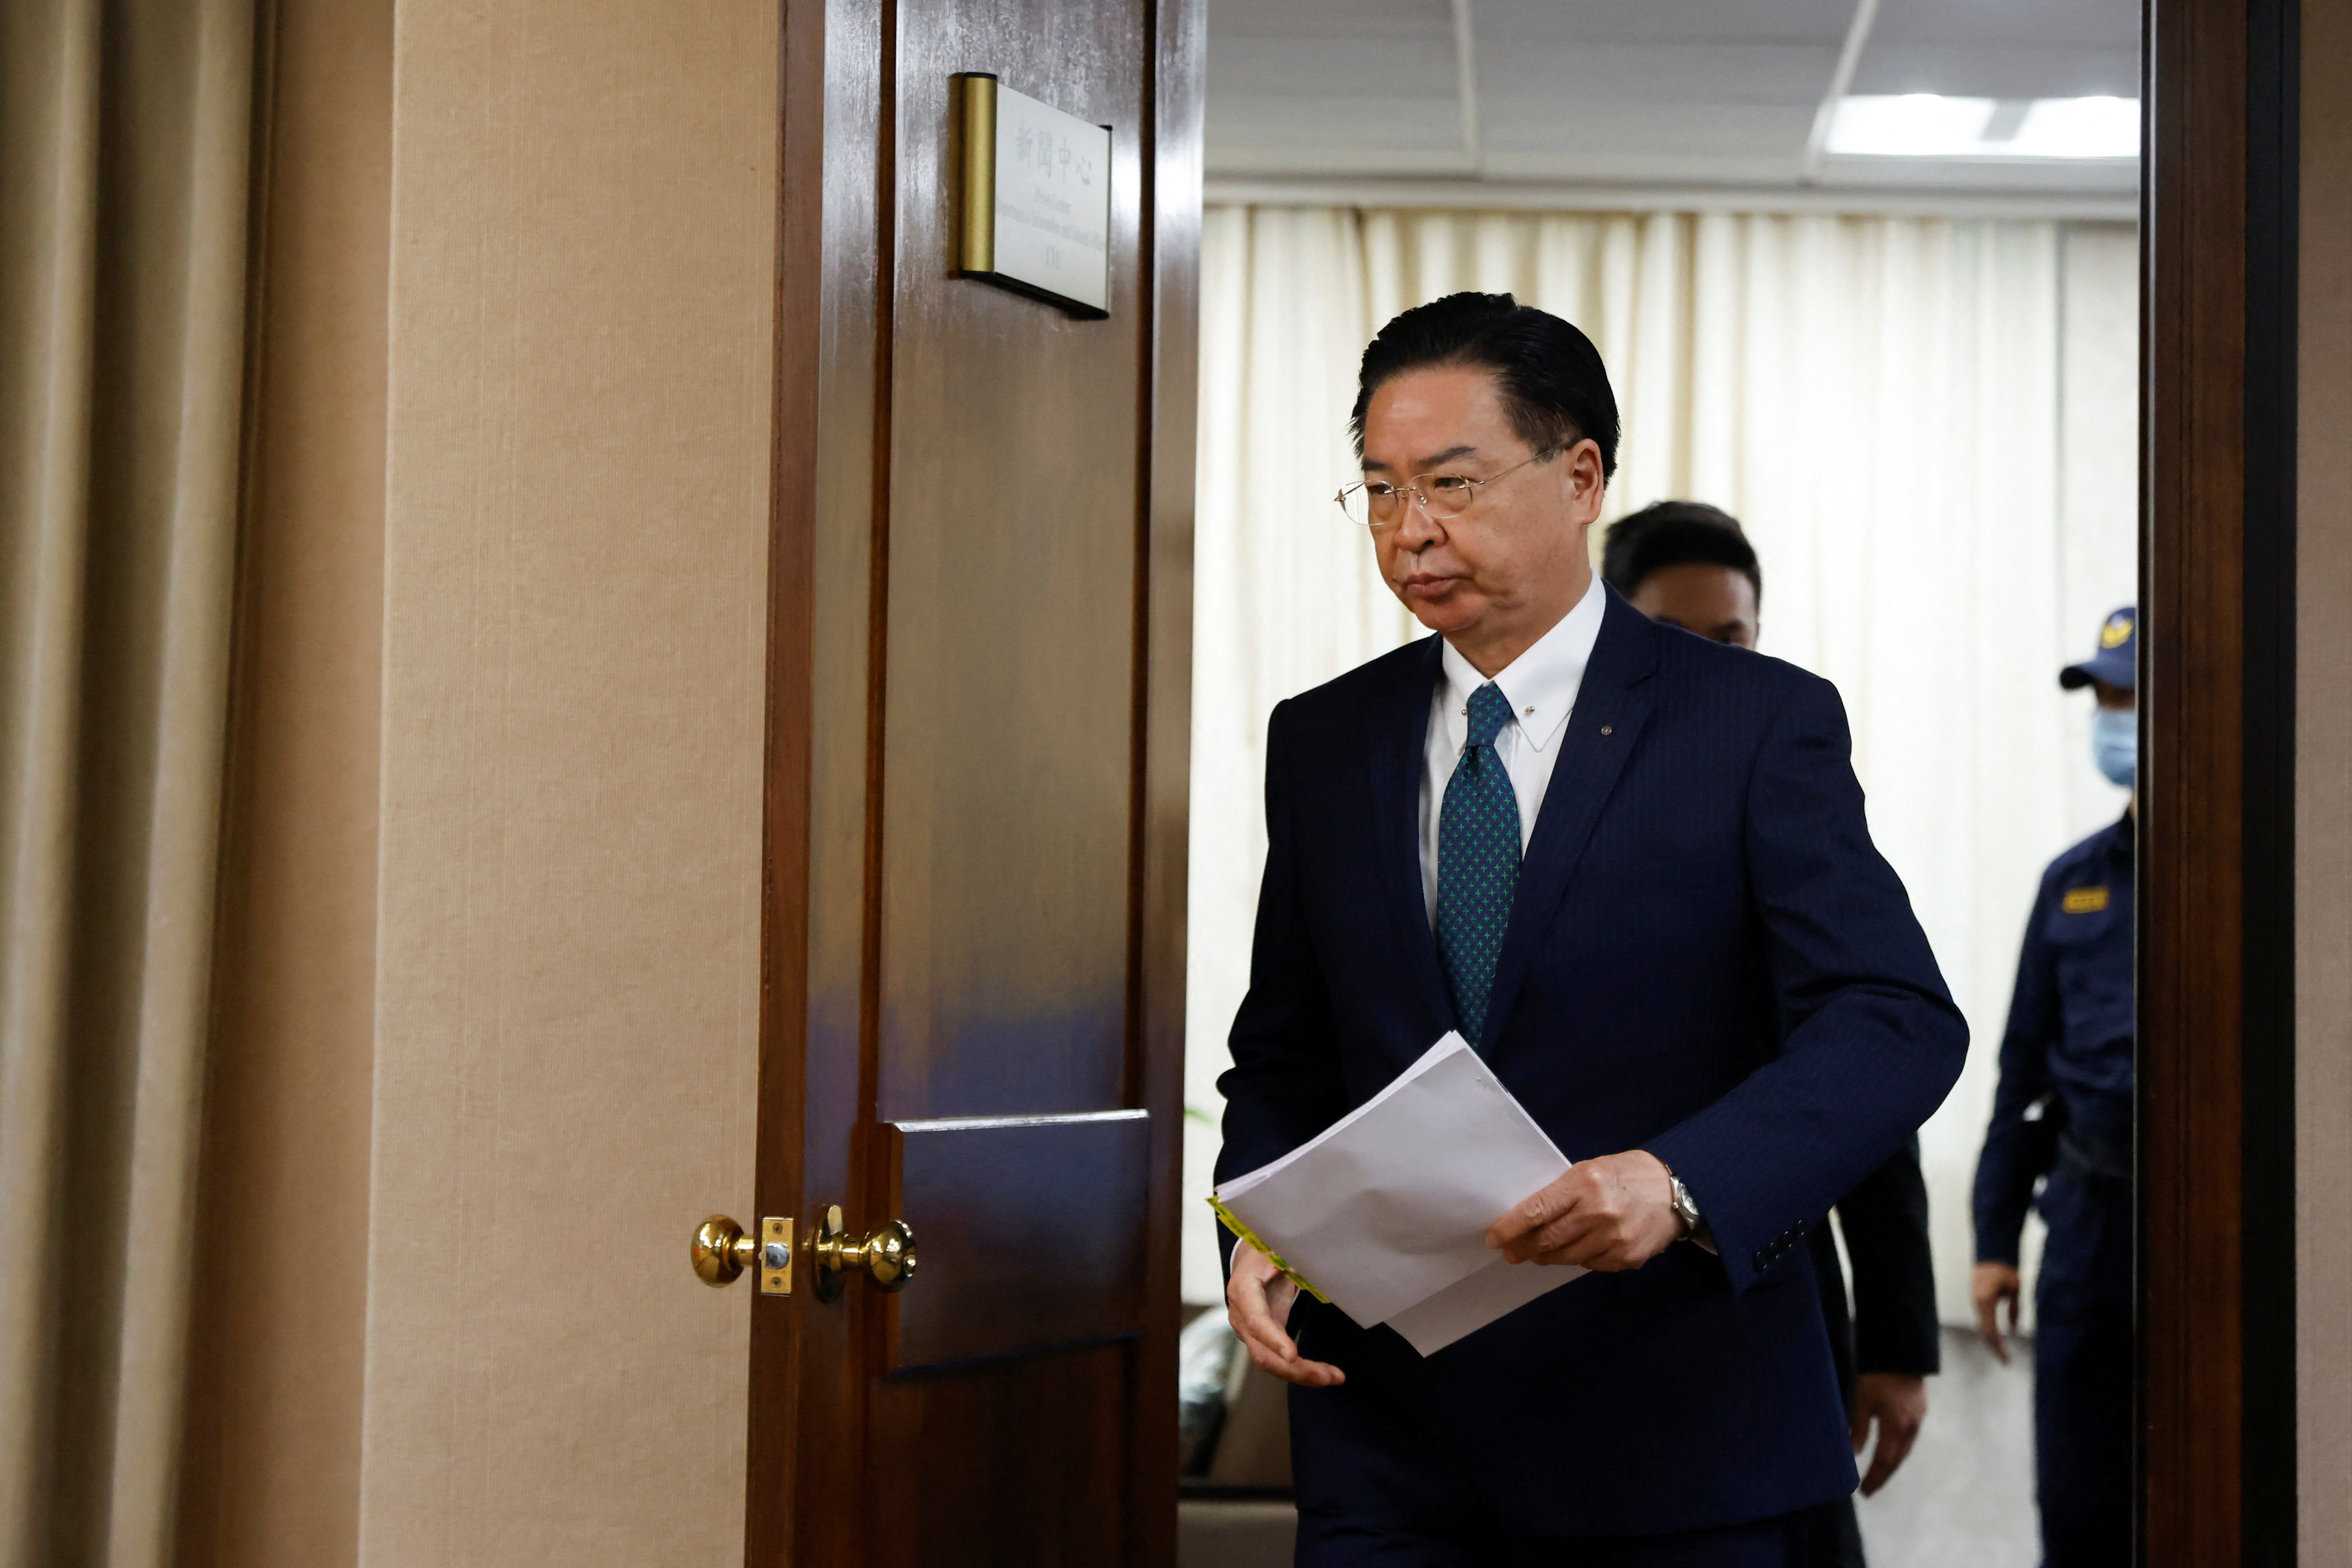 Wu confirmó la ruptura de los lazos entre ambos países en una conferencia de prensa en Taipéi y aseguró que cerraría su embajada en Honduras y retiraría a su embajador. (REUTERS)